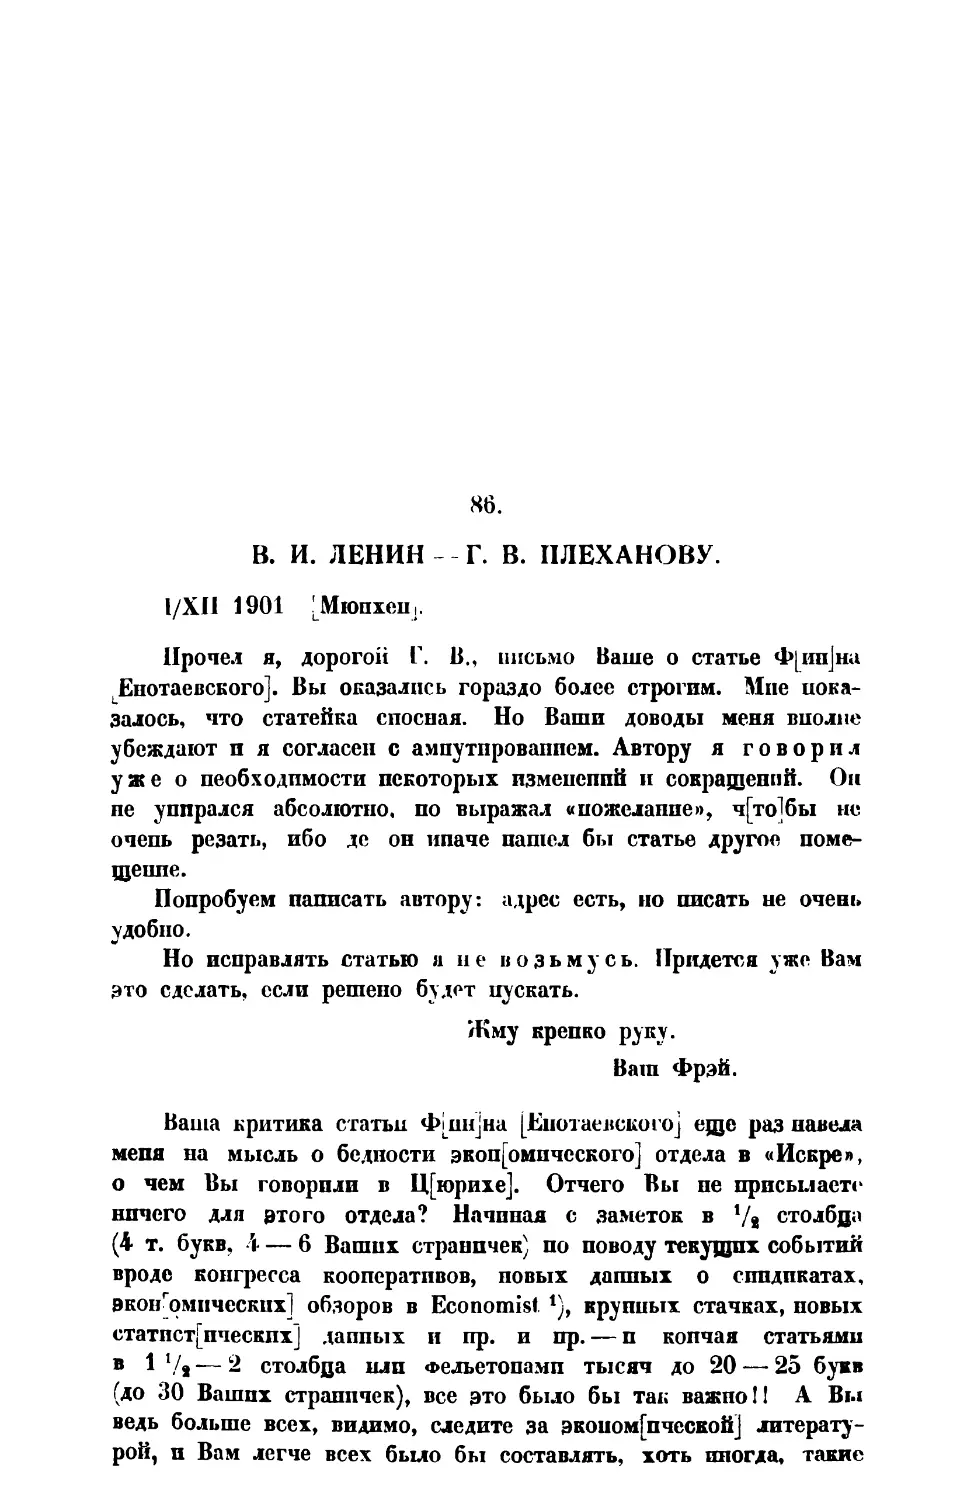 86. В. И. Ленин. — Письмо Г. В. Плеханов от 1 XII 1901 г.